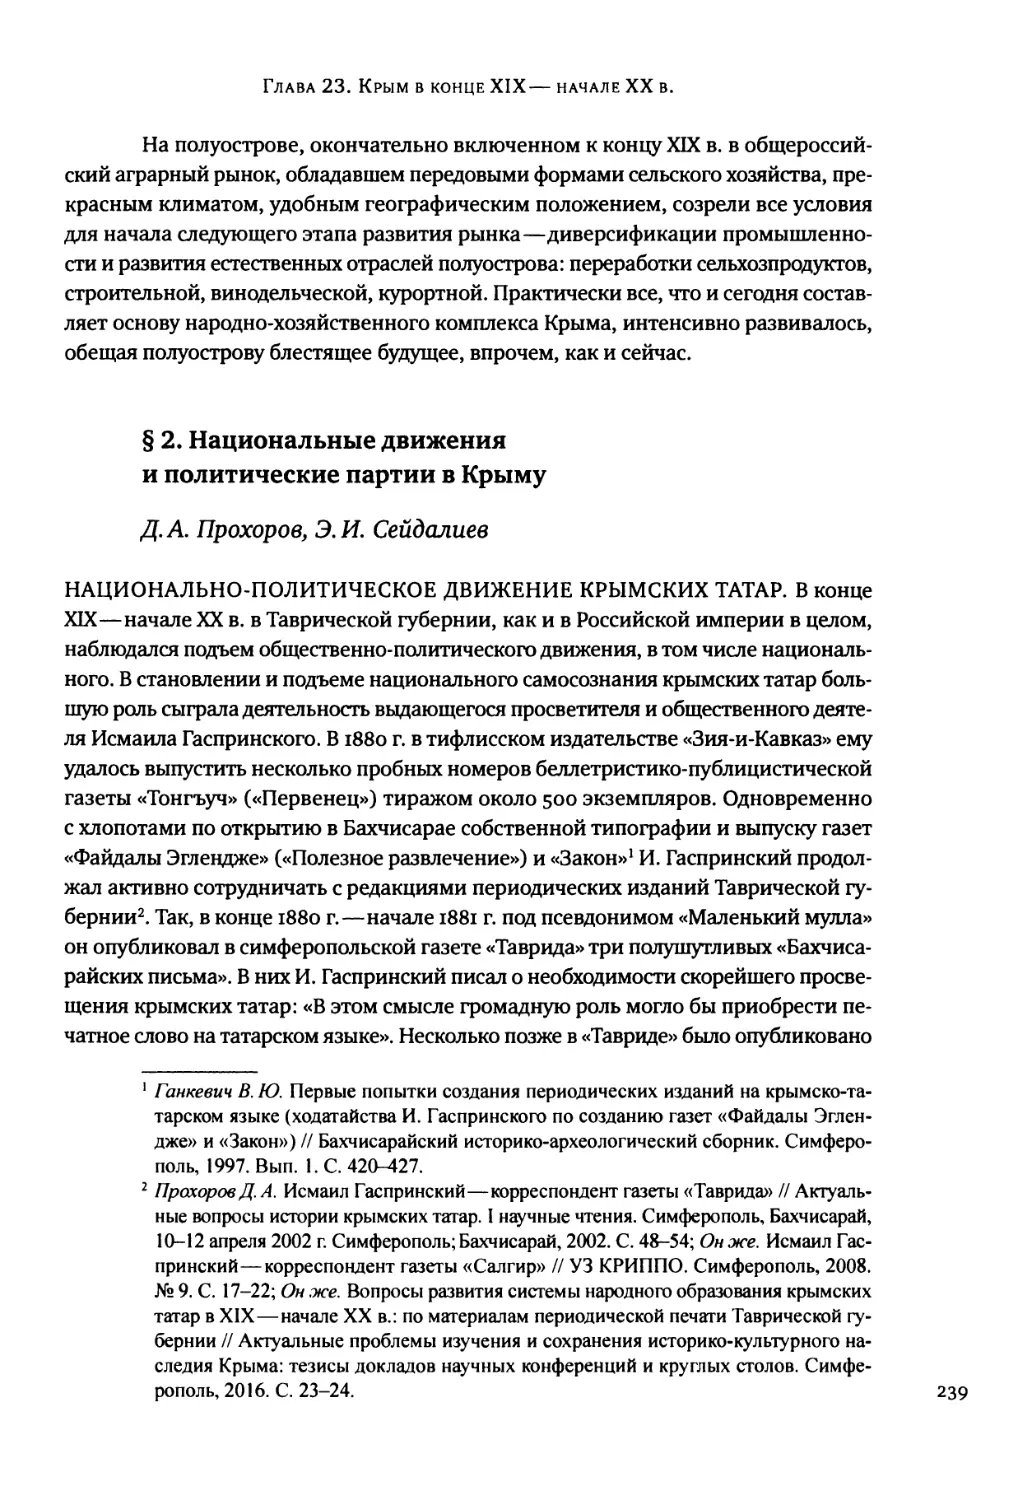 § 2. Национальные движения и политические партии в Крыму